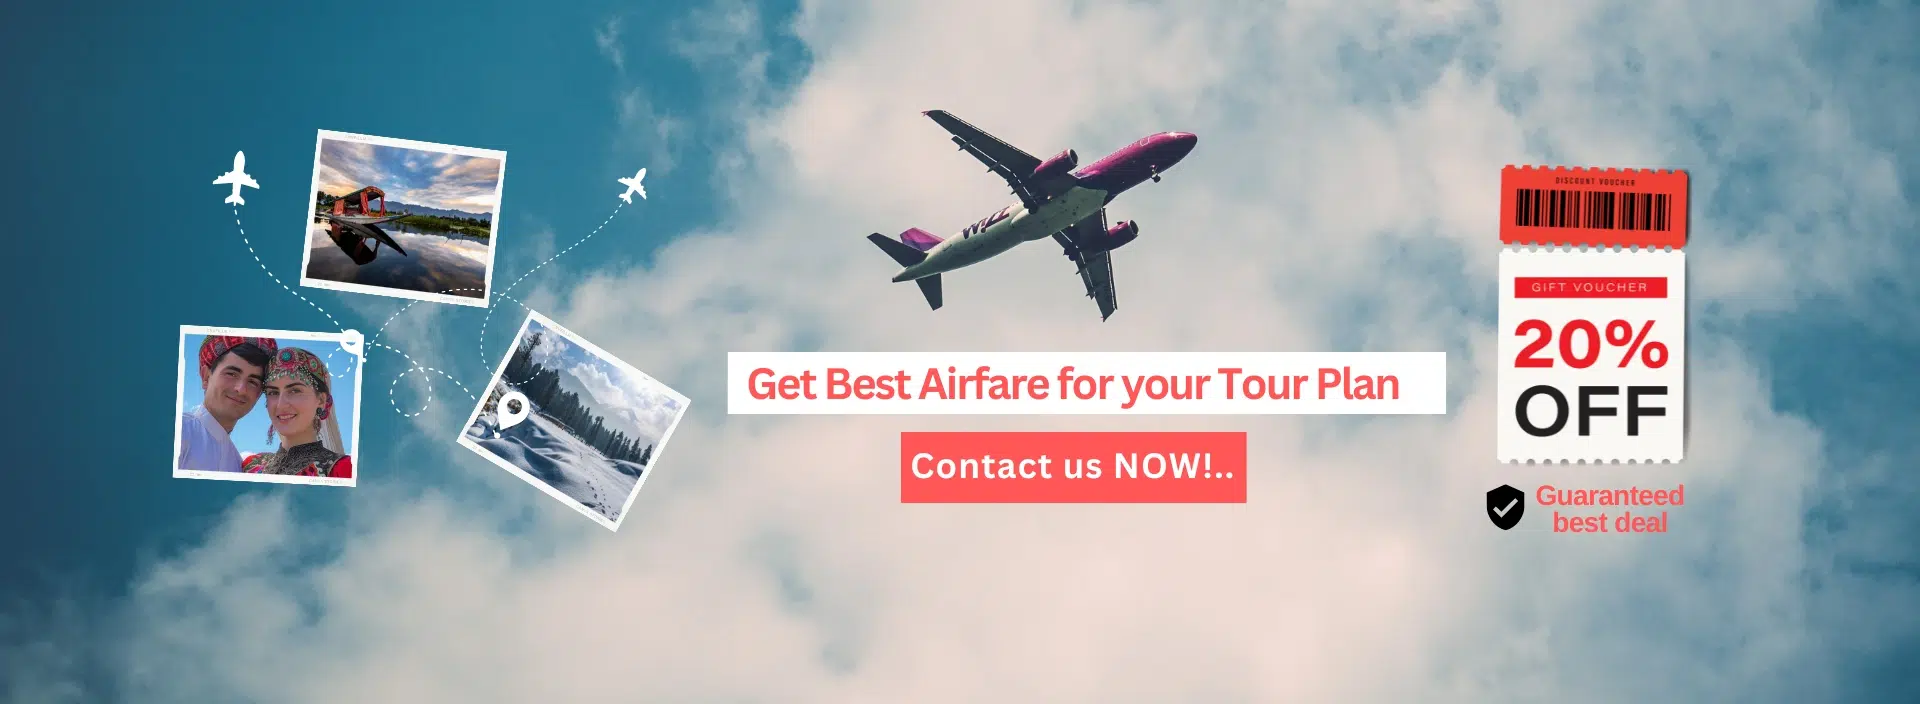 Get Best Airfare for your Tour Plan Kashmirhills.com